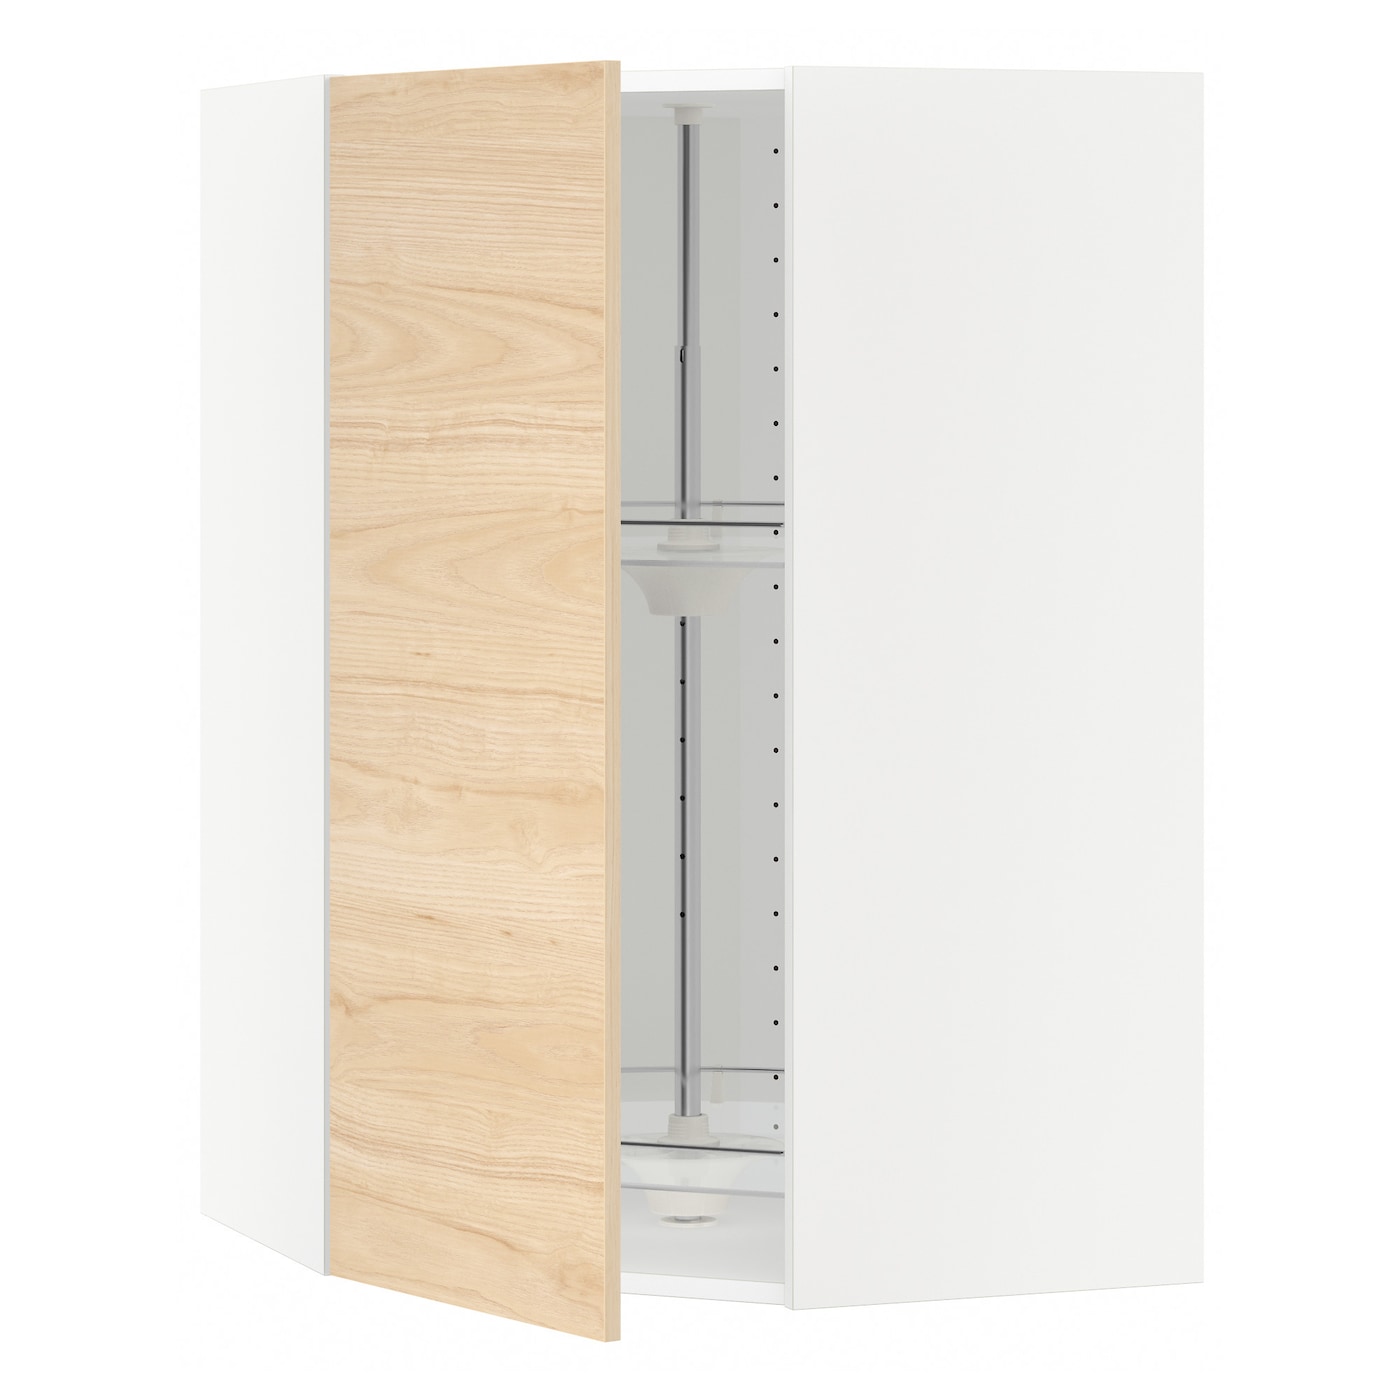 Угловой навесной шкаф с каруселью - METOD  IKEA/  МЕТОД ИКЕА, 100х68 см, белый/под беленый дуб